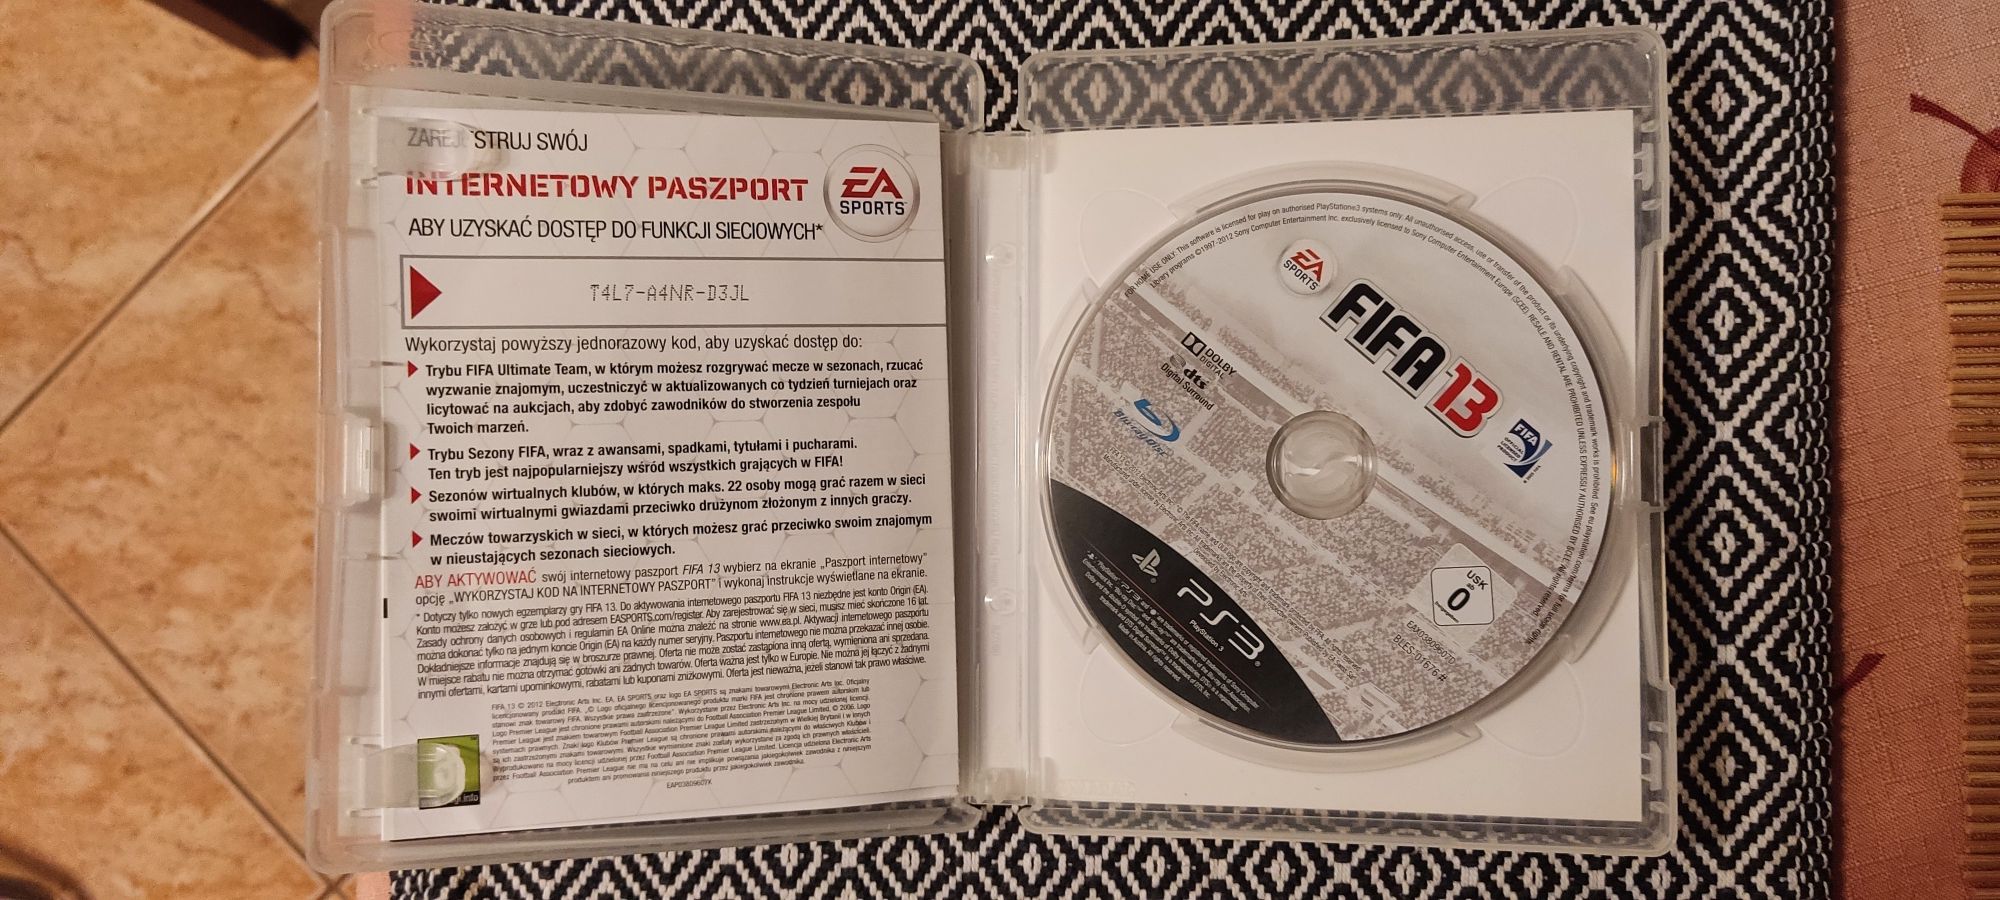 FIFA 13 PS3 Używana